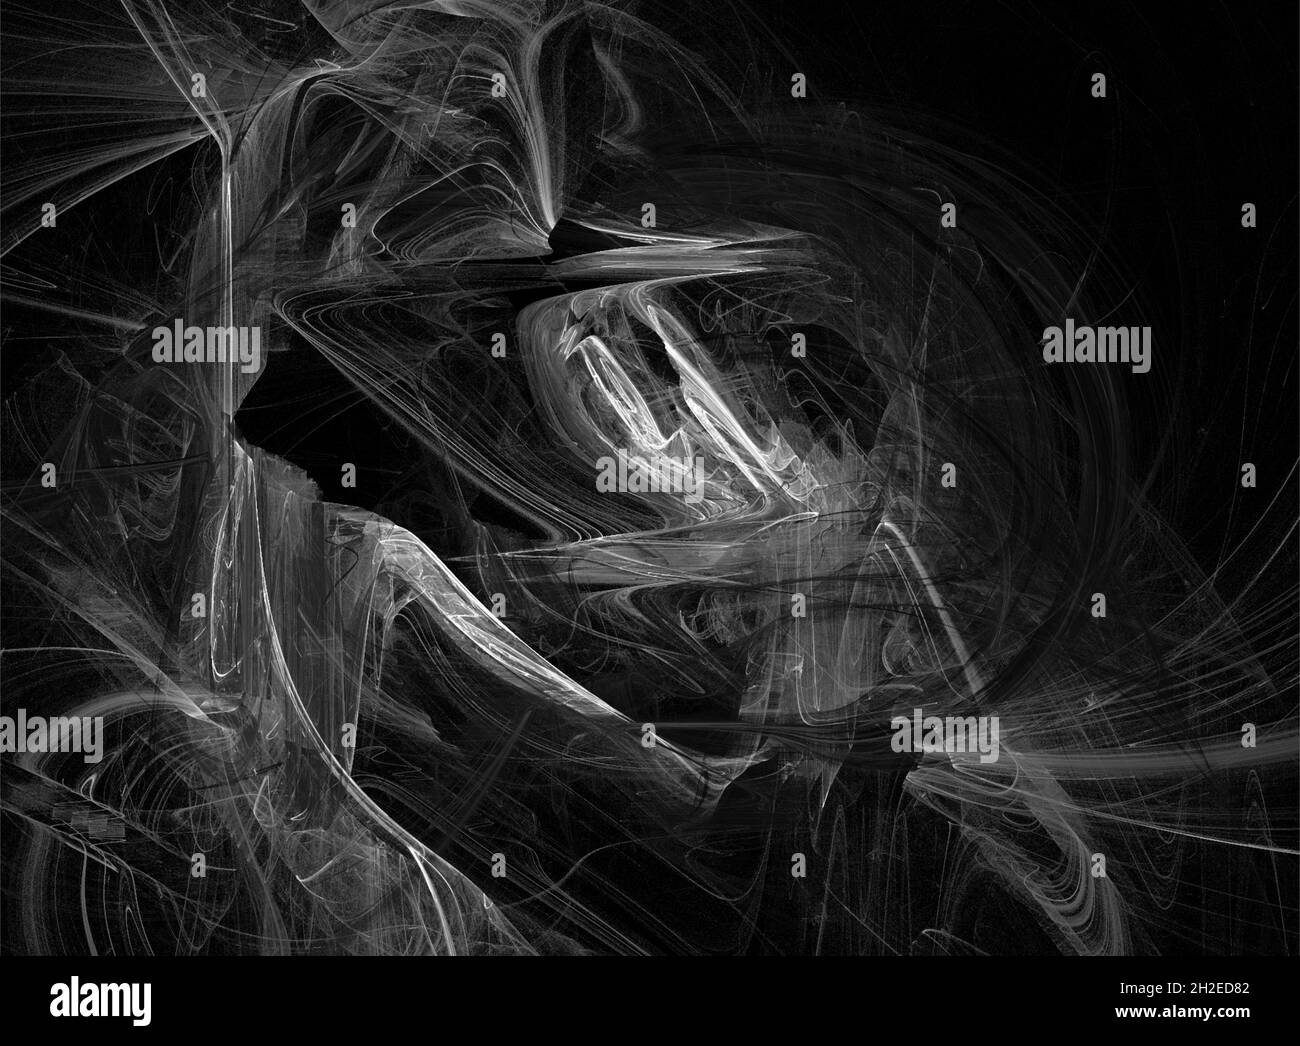 Schwarz-weiße Textur, Hintergrund für Robo-Tabelle, Grafiken, abstraktes Design, Rendering Stockfoto